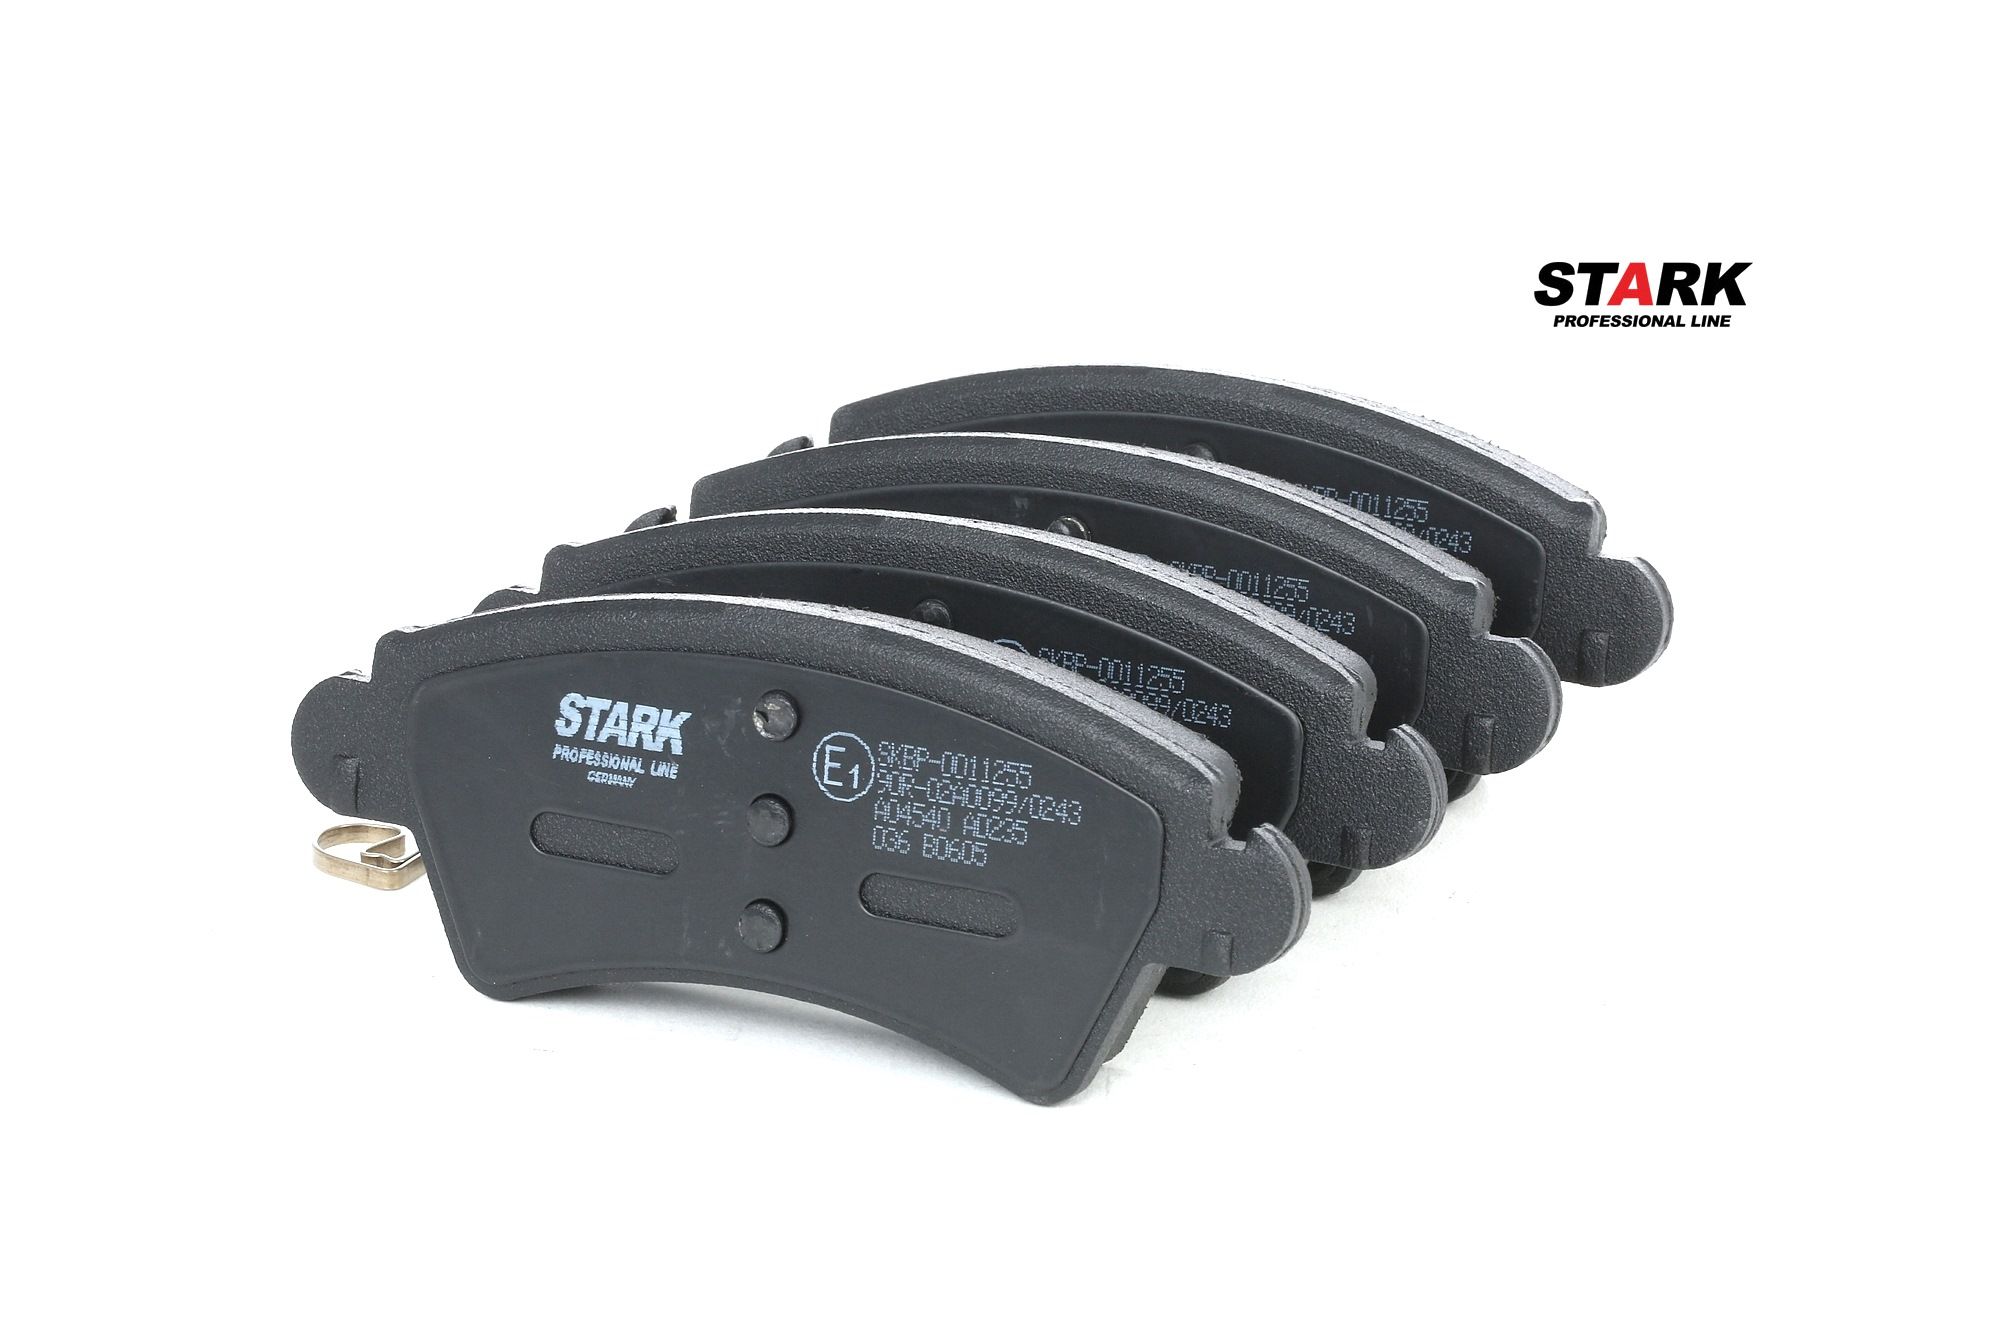 STARK SKBP-0011255 Brake pad set Front Axle